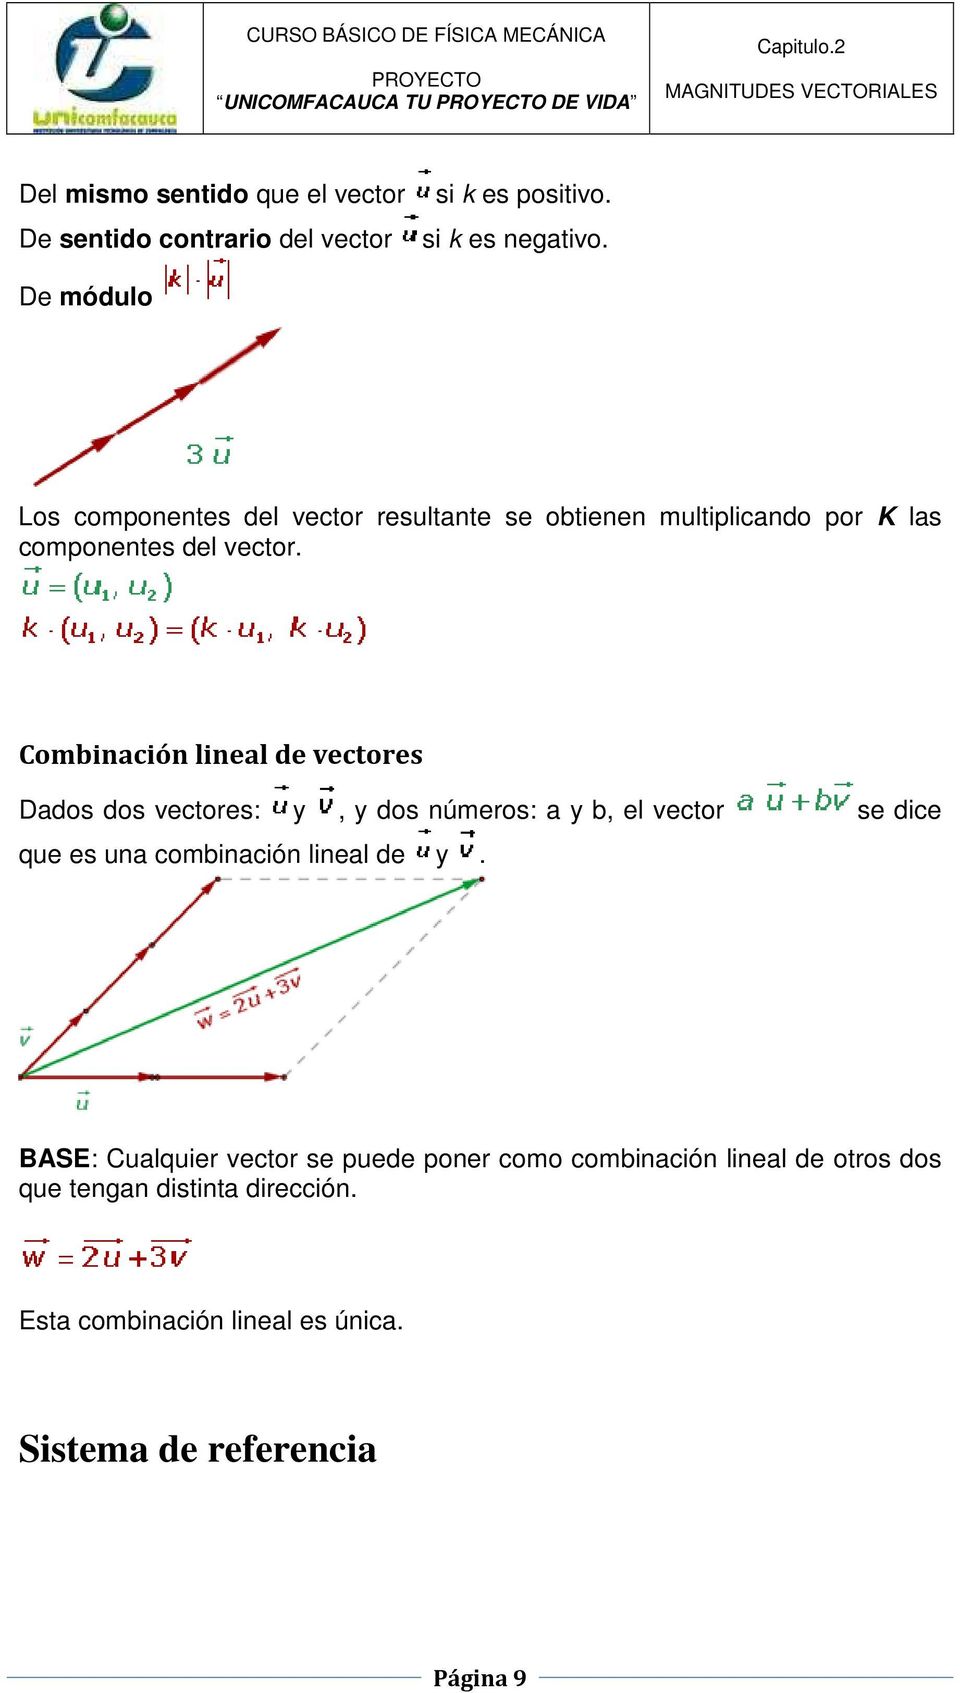 Combinación lineal de vectores Dados dos vectores: y, y dos números: a y b, el vector se dice que es una combinación lineal de y.